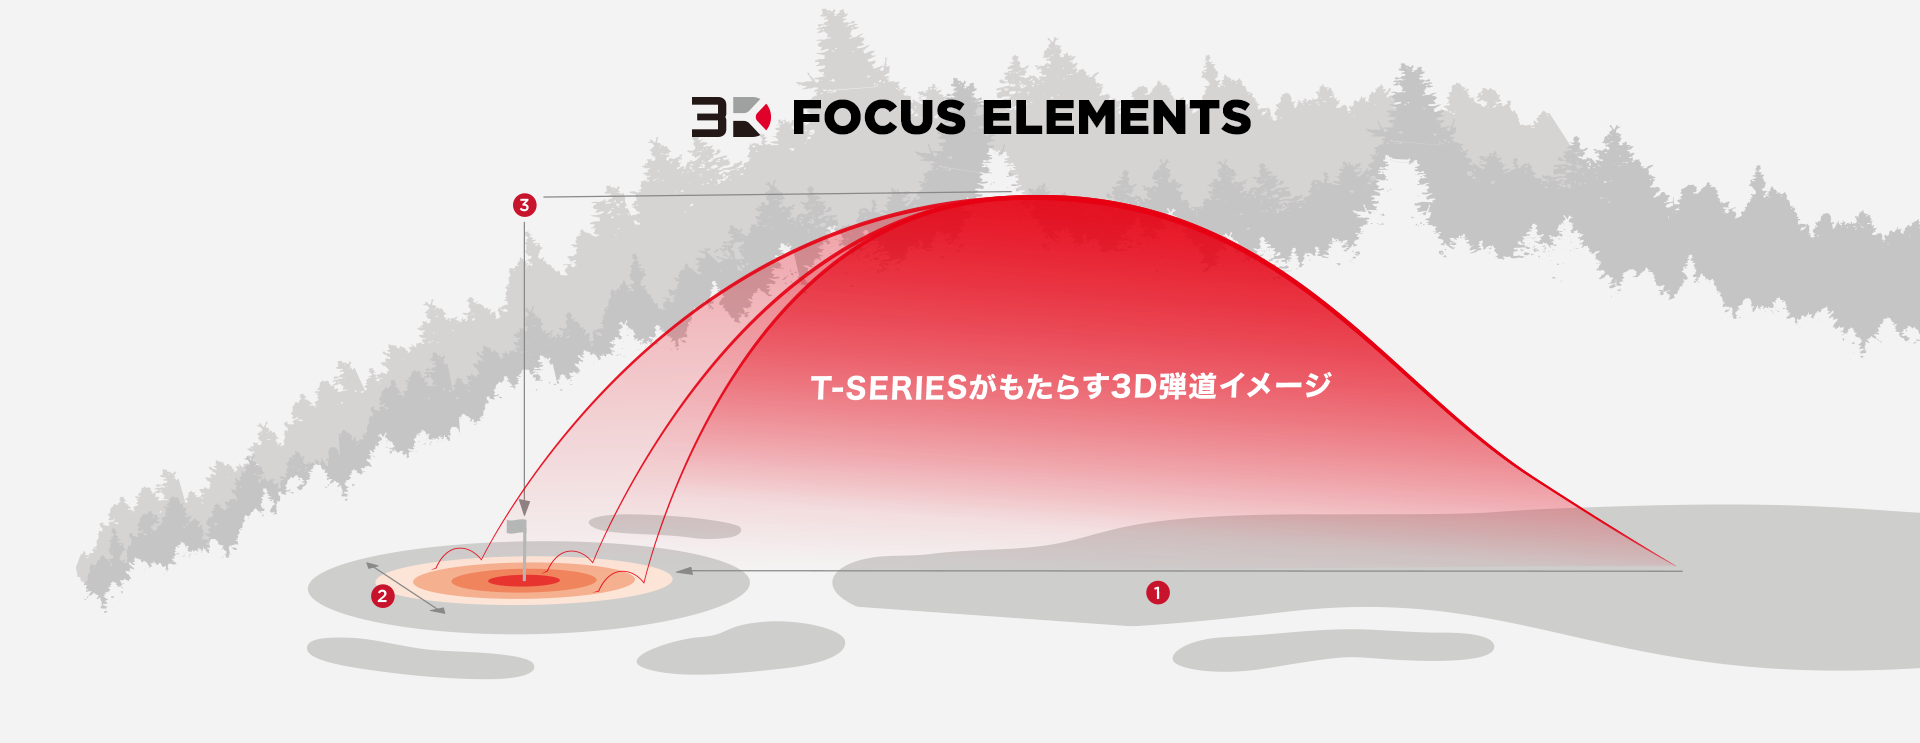 3D FOCUS ELEMENTS T-seriesがもたらした3D弾道のイメージ